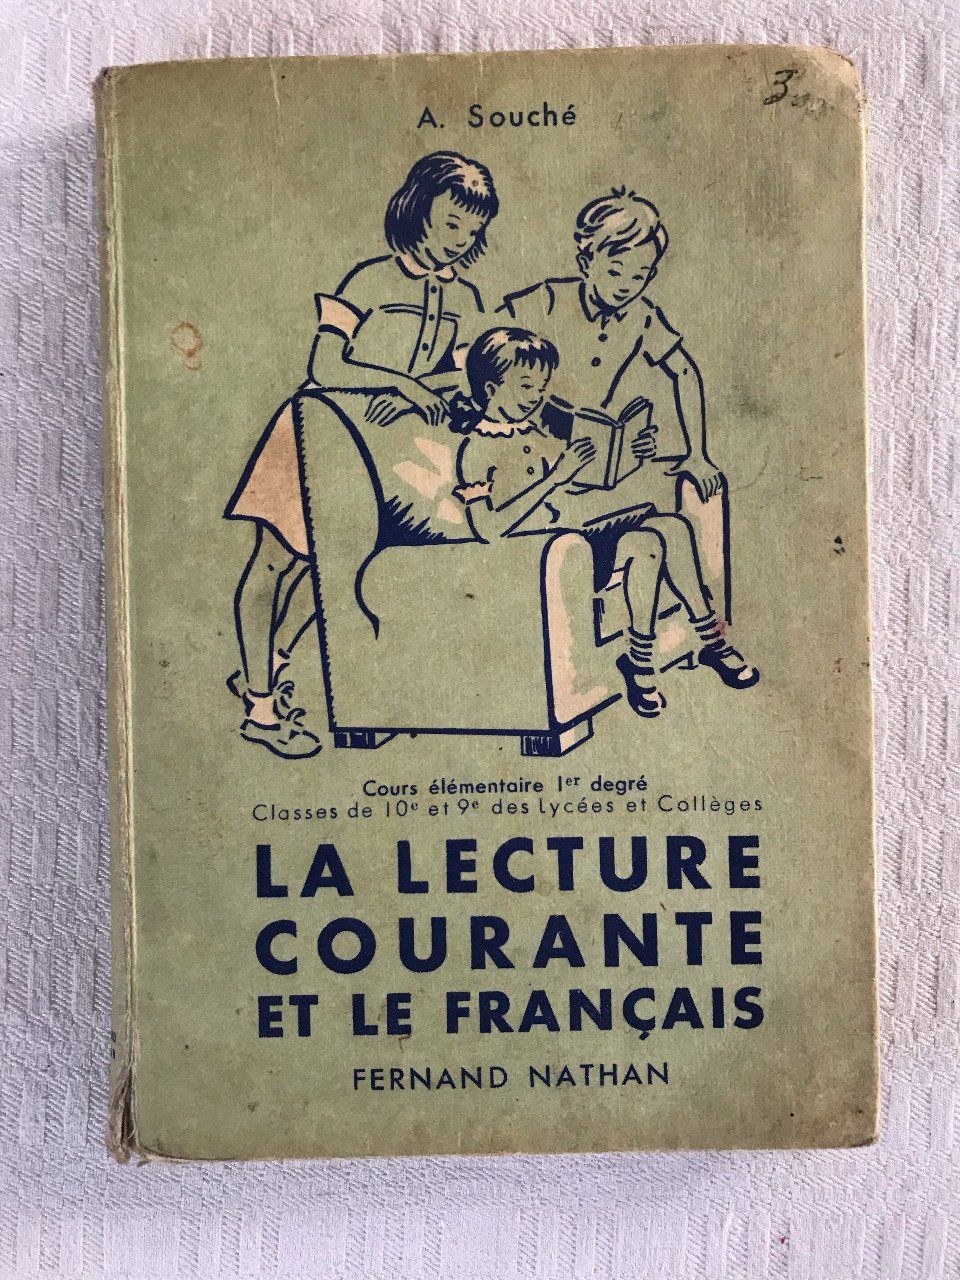 Livre scolaire ancien, La lecture courante et le Français, 1953